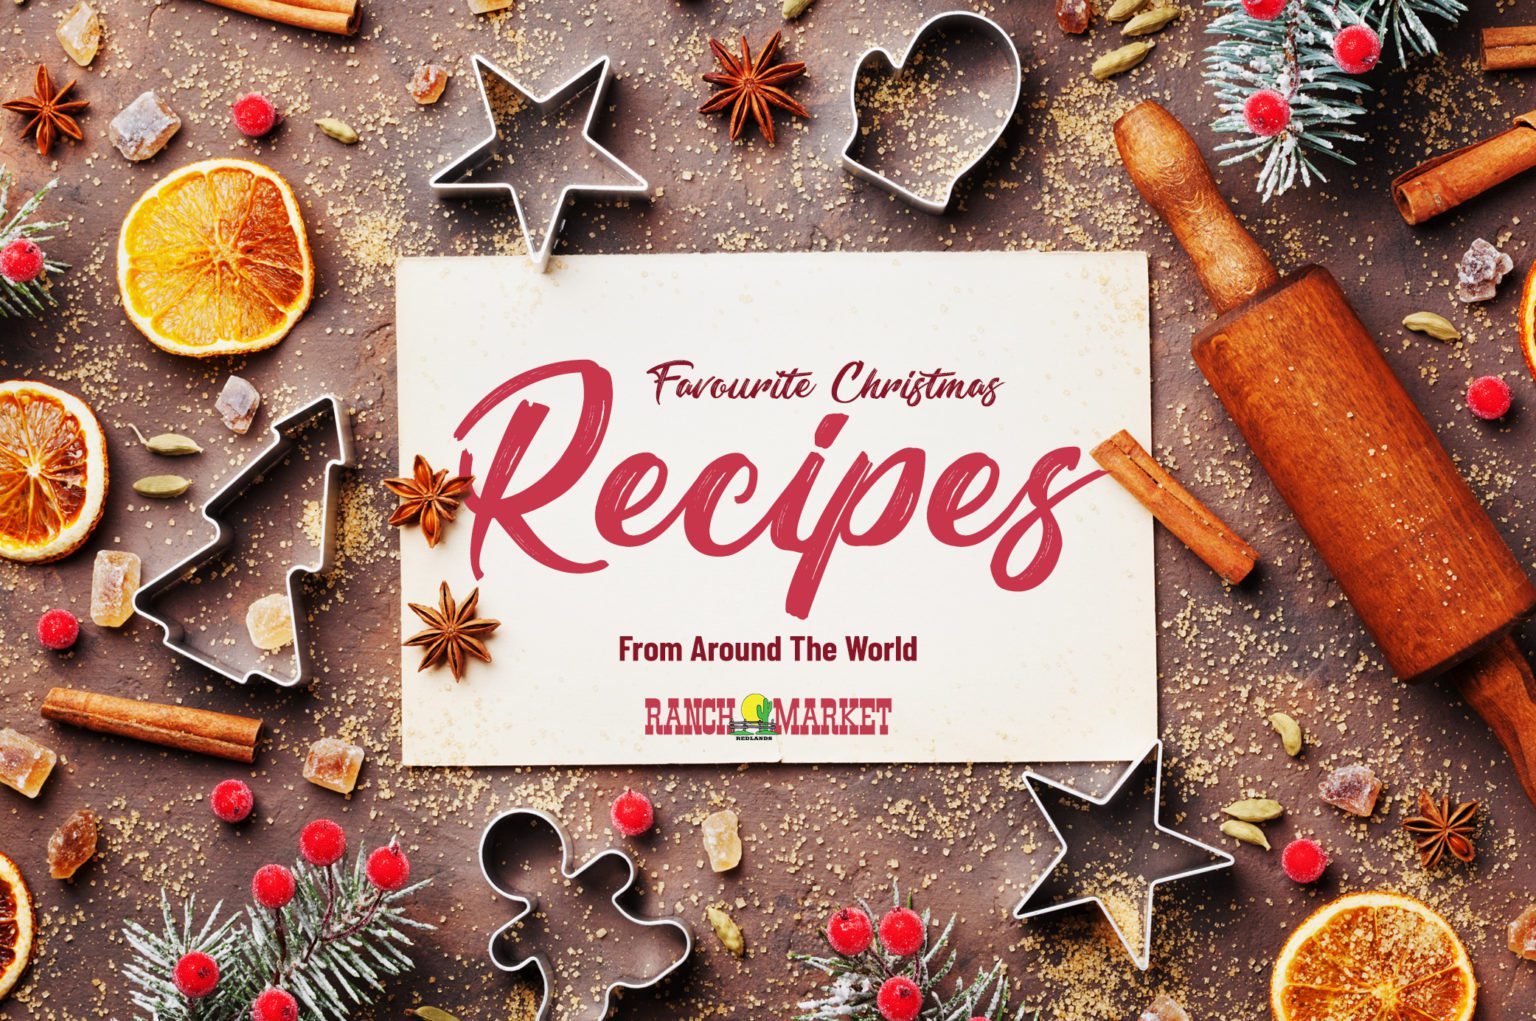 Favourite-Christmas-Recipes